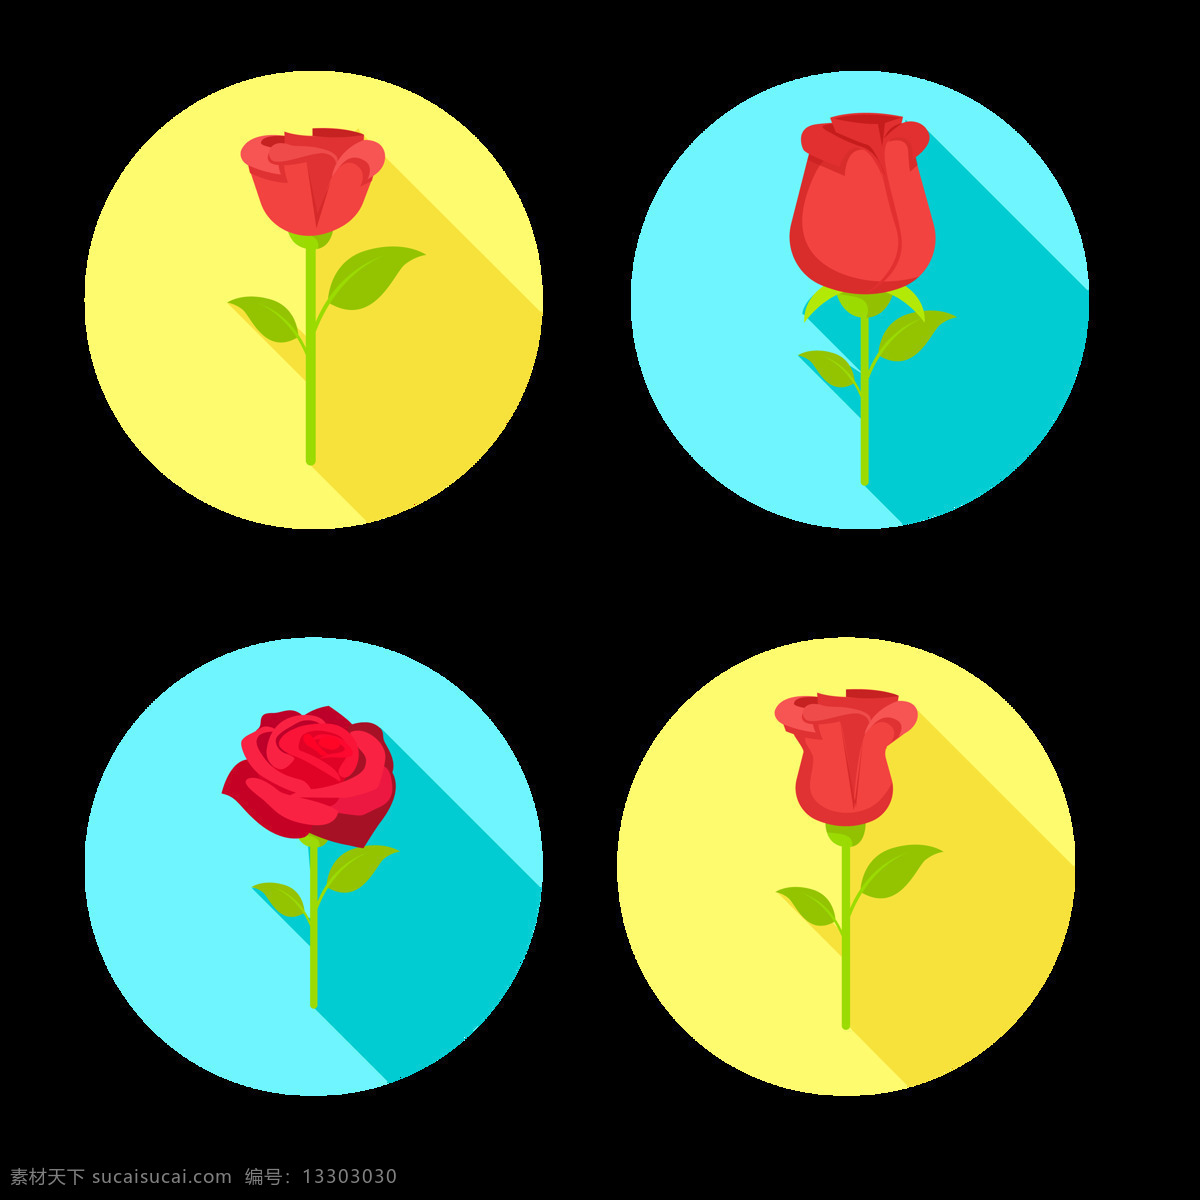 圆形 玫瑰花 插画 图标 免 抠 透明 图 层 手绘玫瑰素材 卡通玫瑰 花卉插图 花卉图标 唯美 手绘玫瑰 浪漫元素 玫瑰花束 爱情 元素 粉色 玫瑰